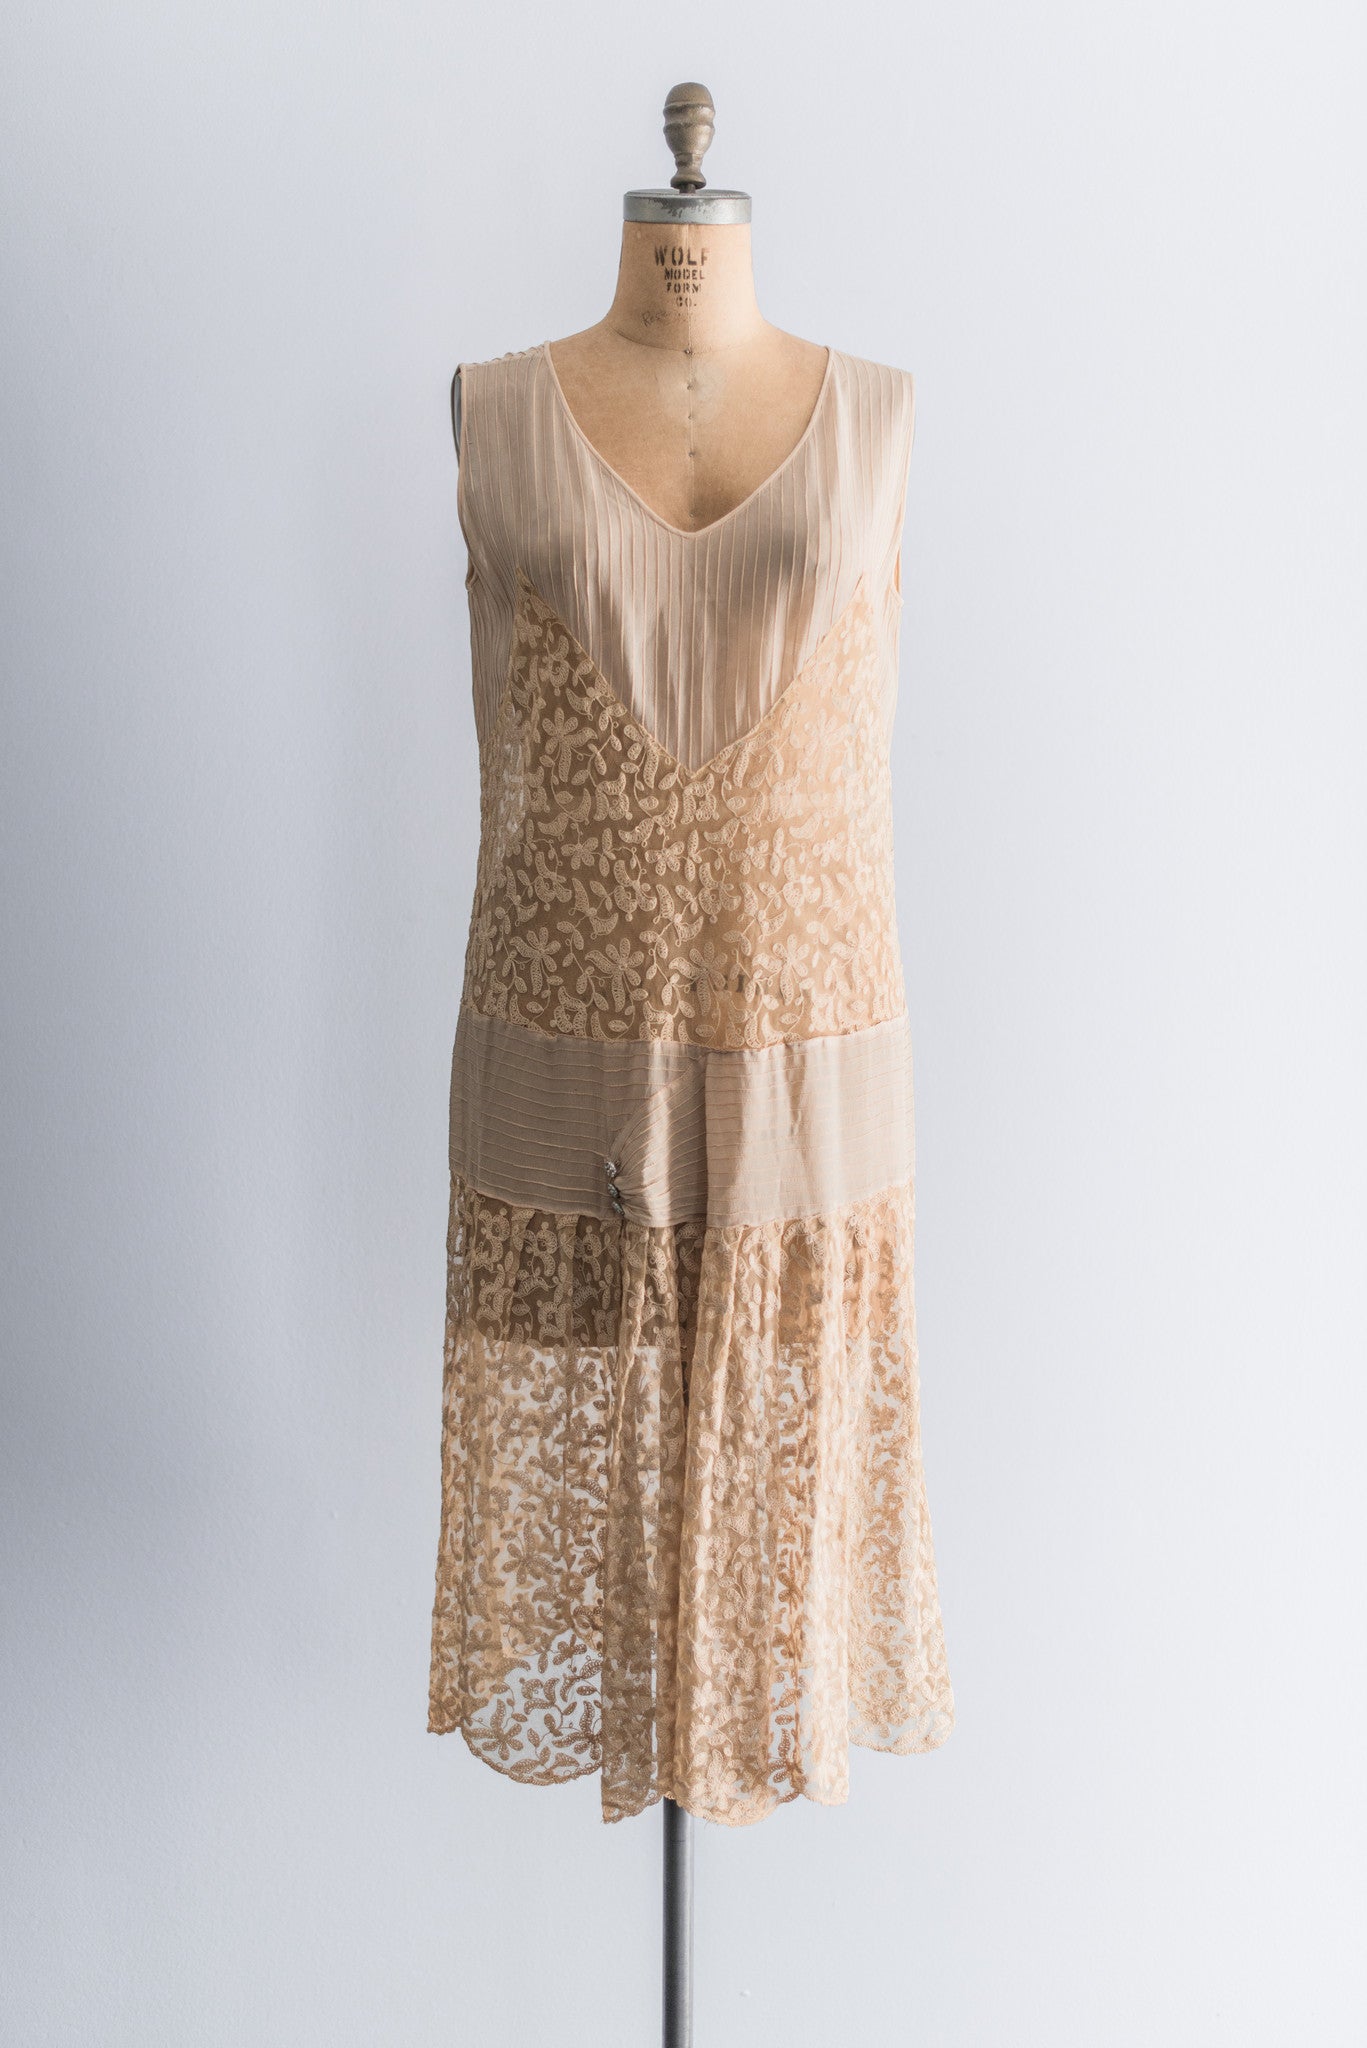 1920s Needlepoint Lace and Silk Chiffon Dress - M/L | G O S S A M E R